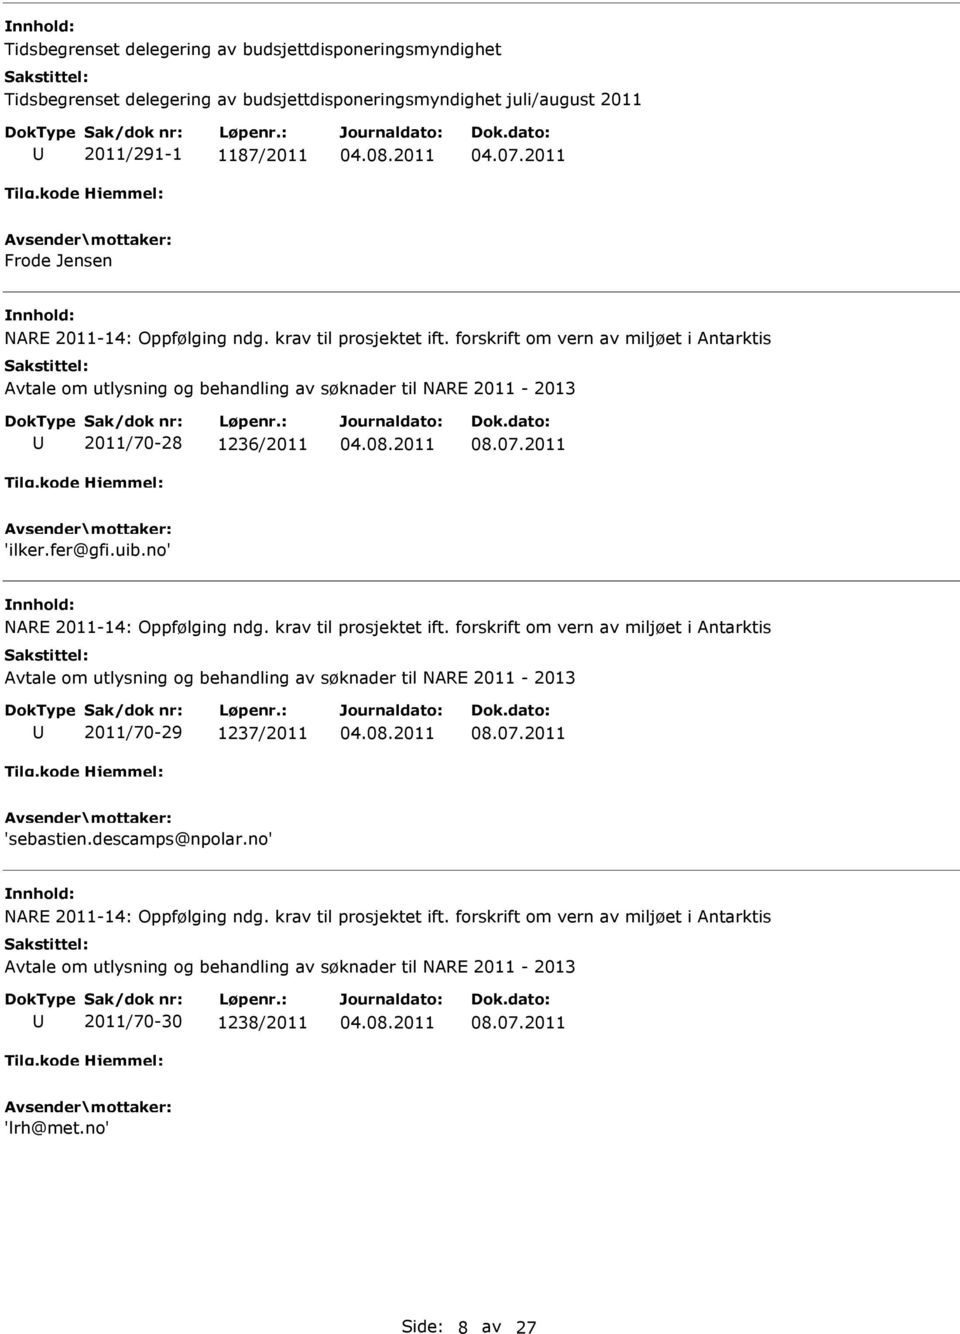 uib.no' NARE 2011-14: Oppfølging ndg. krav til prosjektet ift. forskrift om vern av miljøet i Antarktis 2011/70-29 1237/2011 08.07.2011 'sebastien.